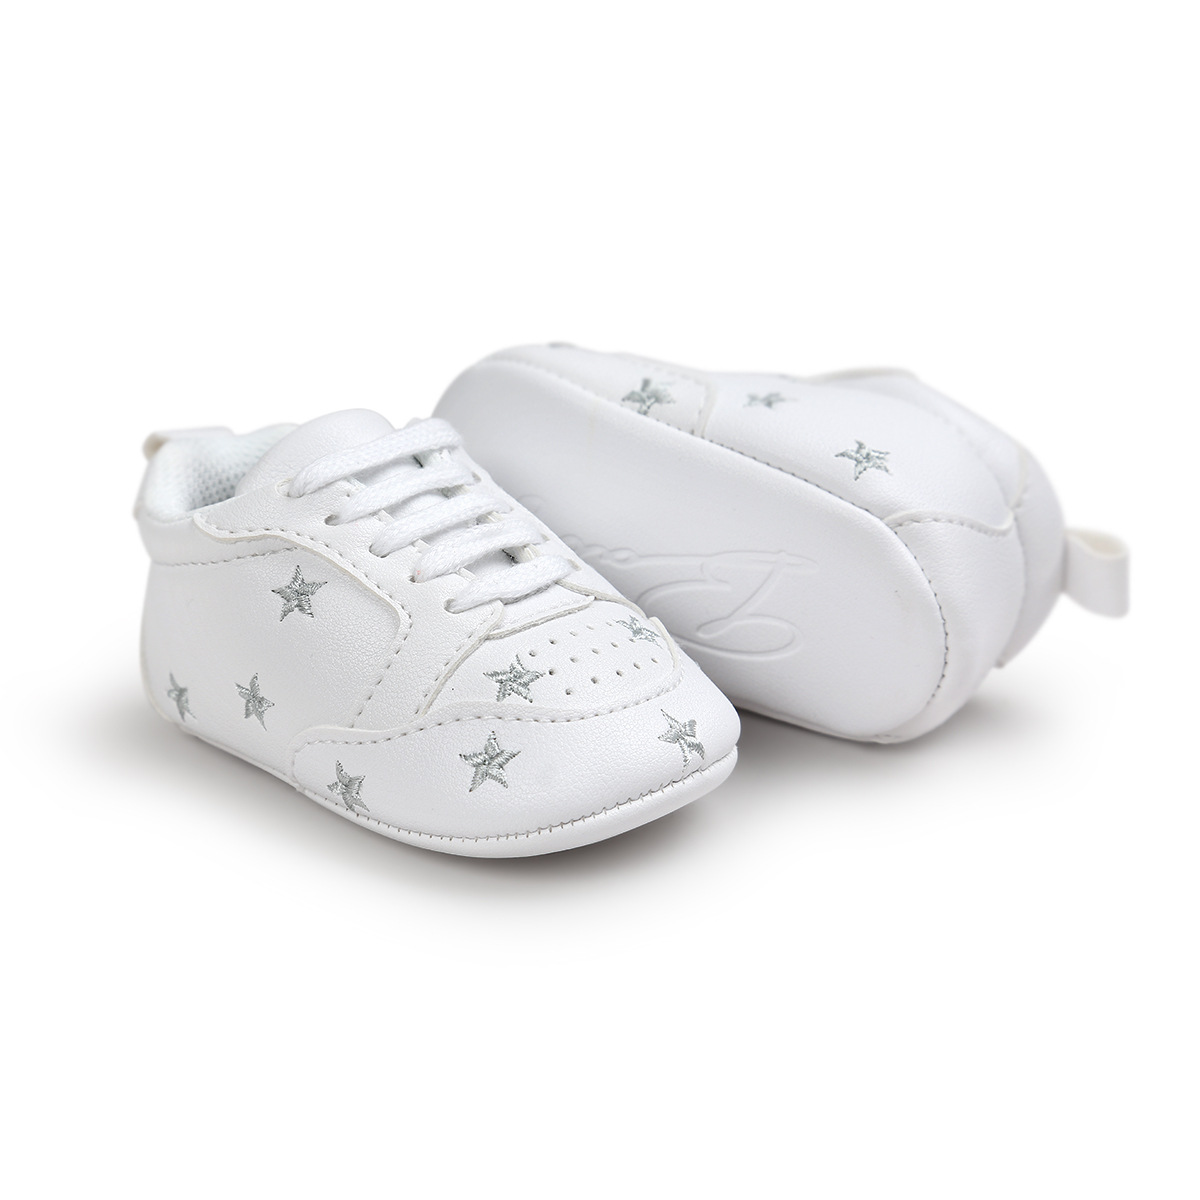 Chaussures bébé en PU artificiel - Ref 3436860 Image 45